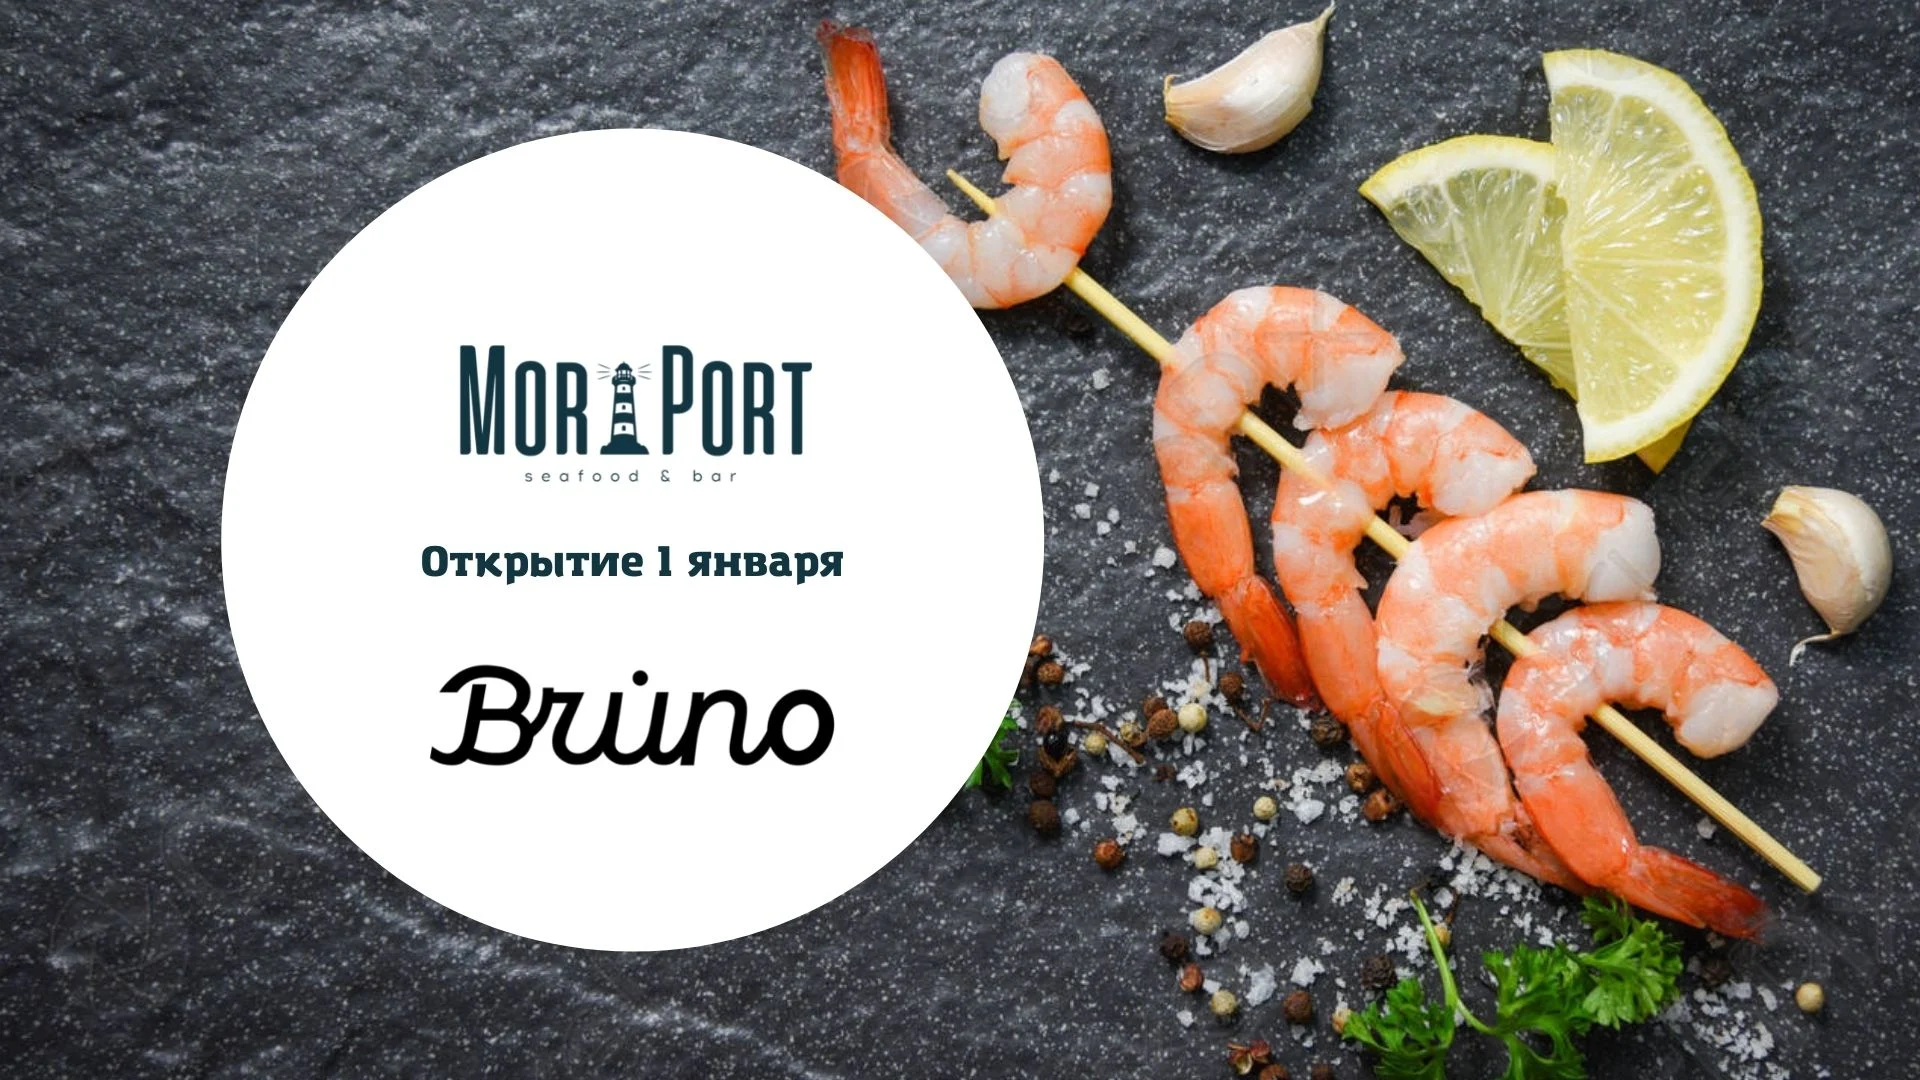 Открытие Bruno и MorPort